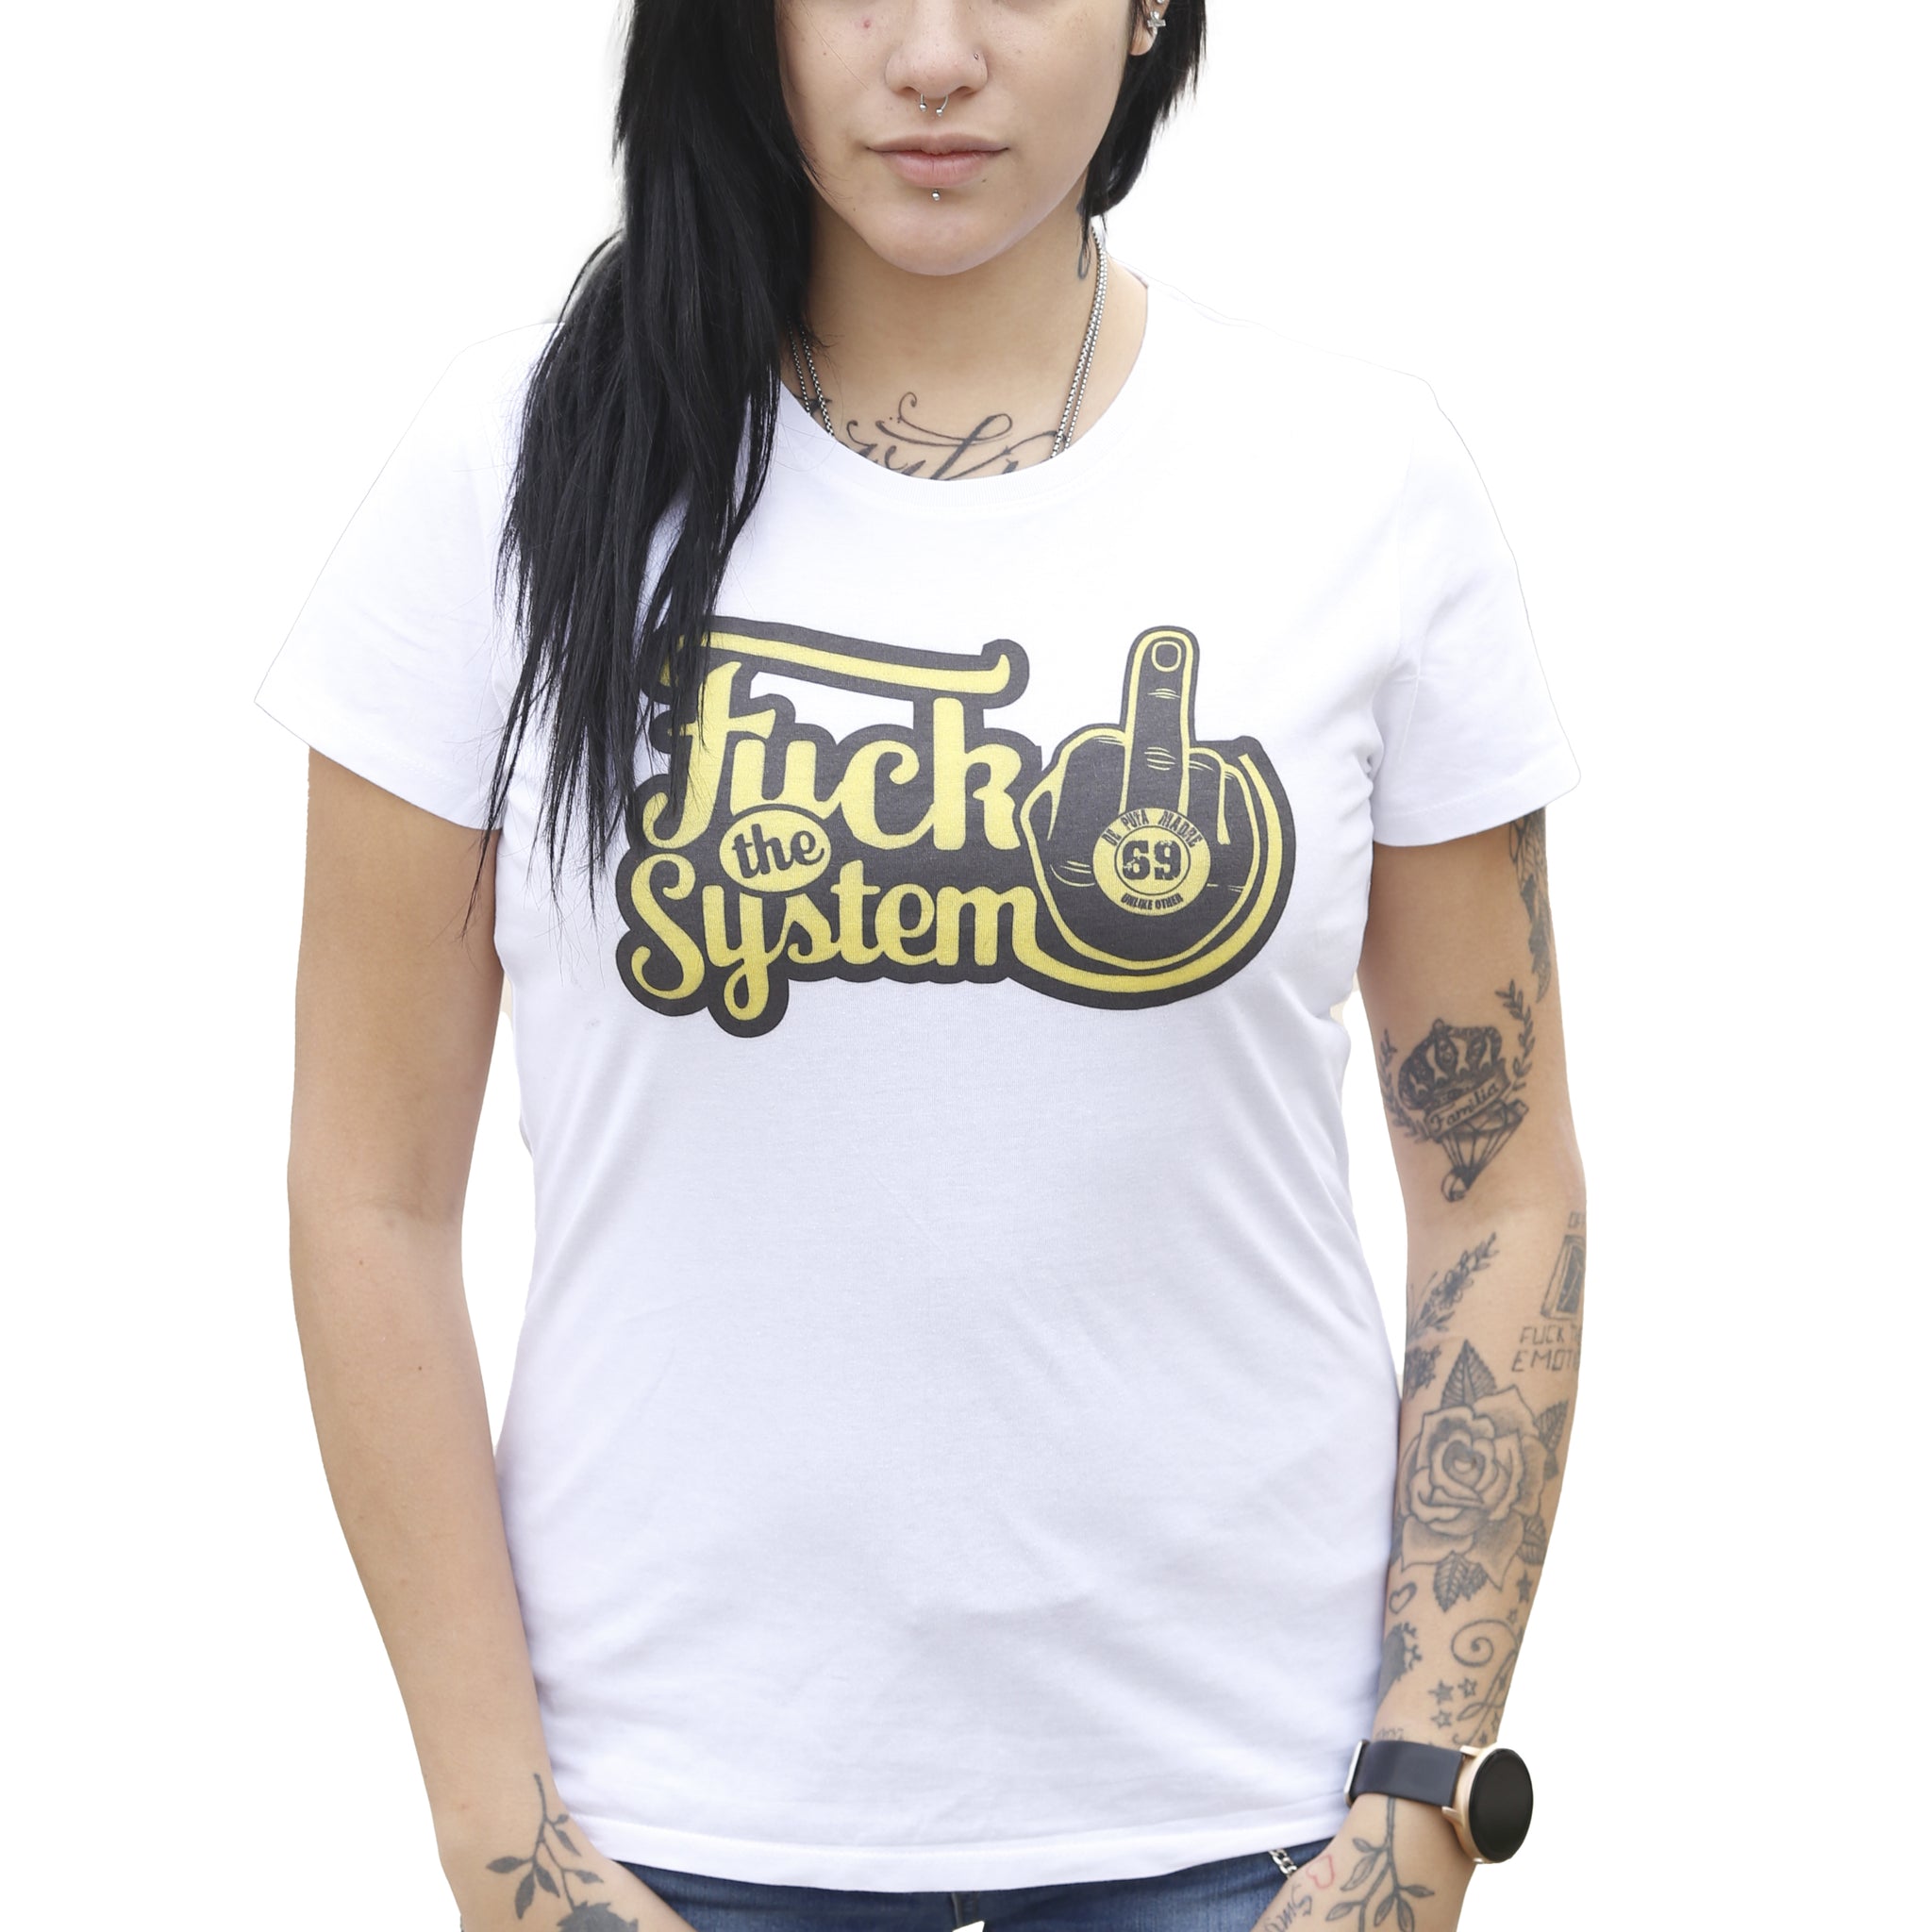 DPM69 T-shirt da donna disegno fatto a mano in italia    f*ck the system